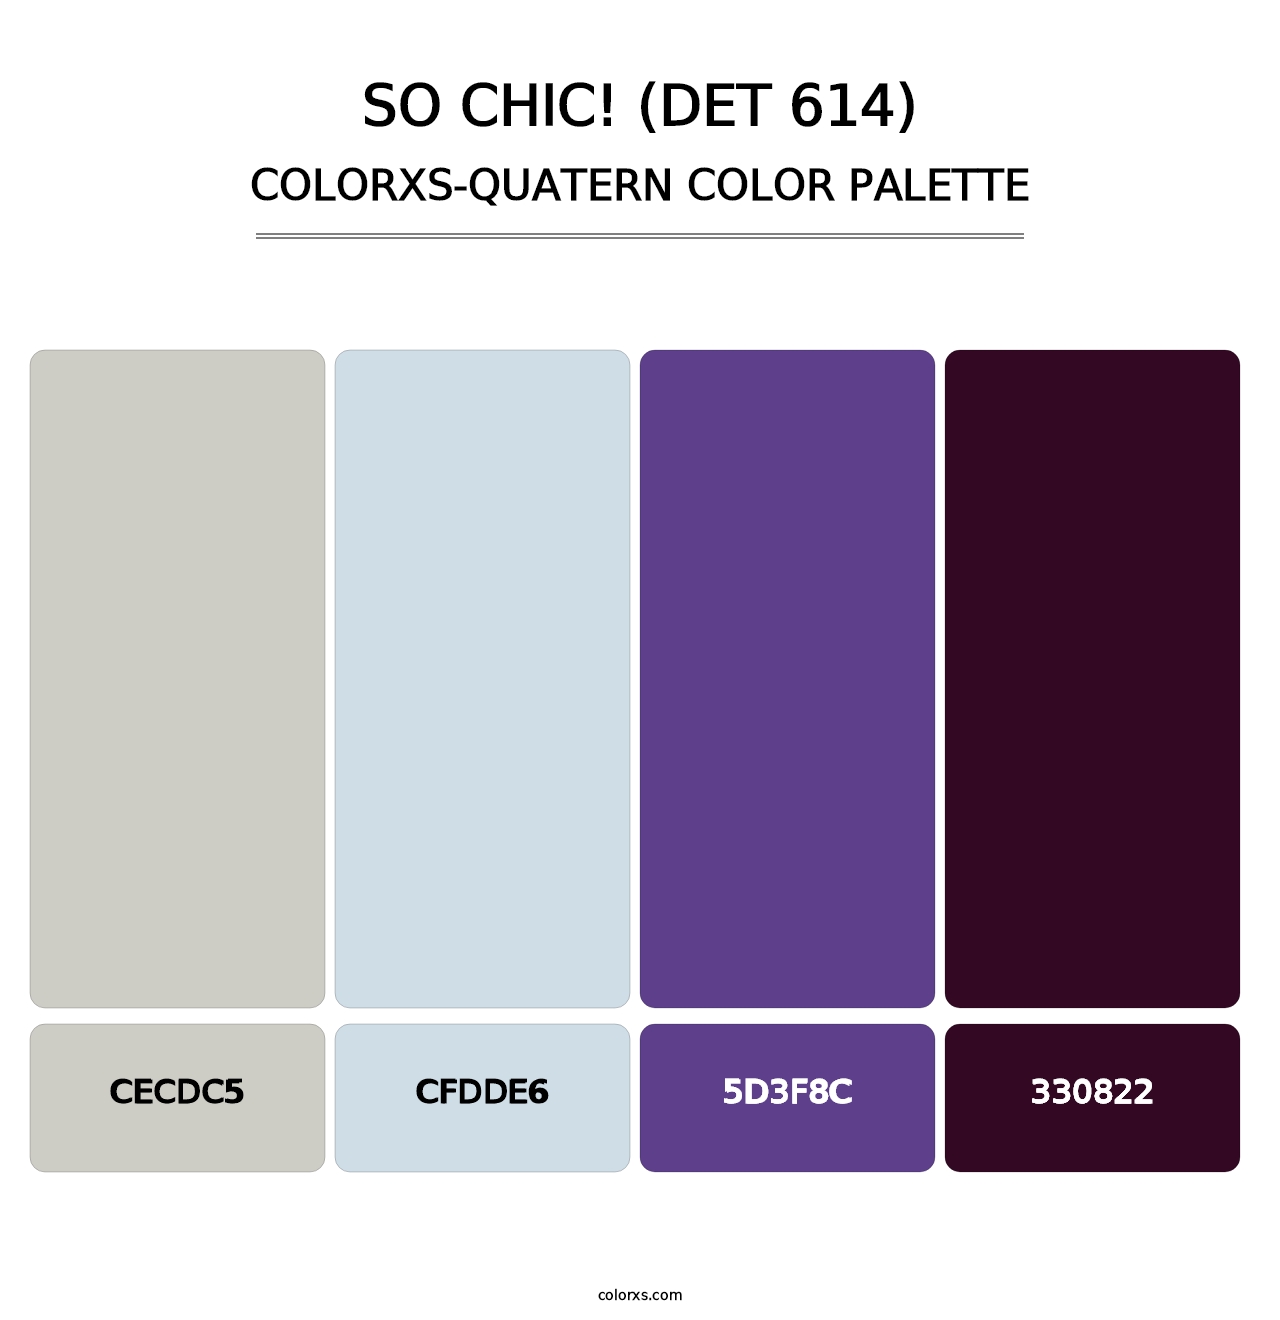 So Chic! (DET 614) - Colorxs Quatern Palette